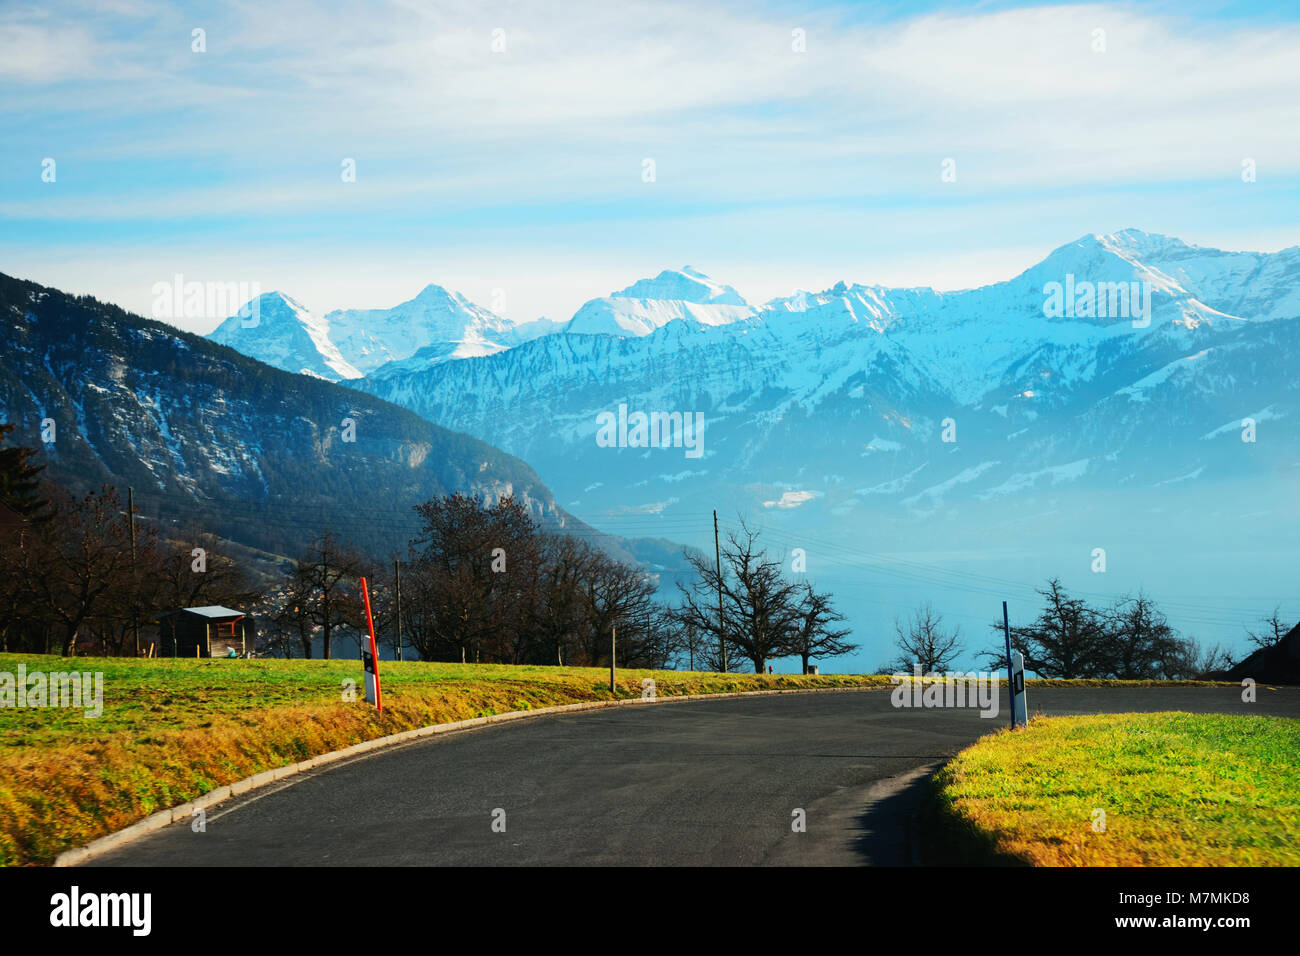 Straße am Sigrilwil Dorf vor der Schweizer Alpen Berge und Thuner See,  Schweiz im Winter Stockfotografie - Alamy